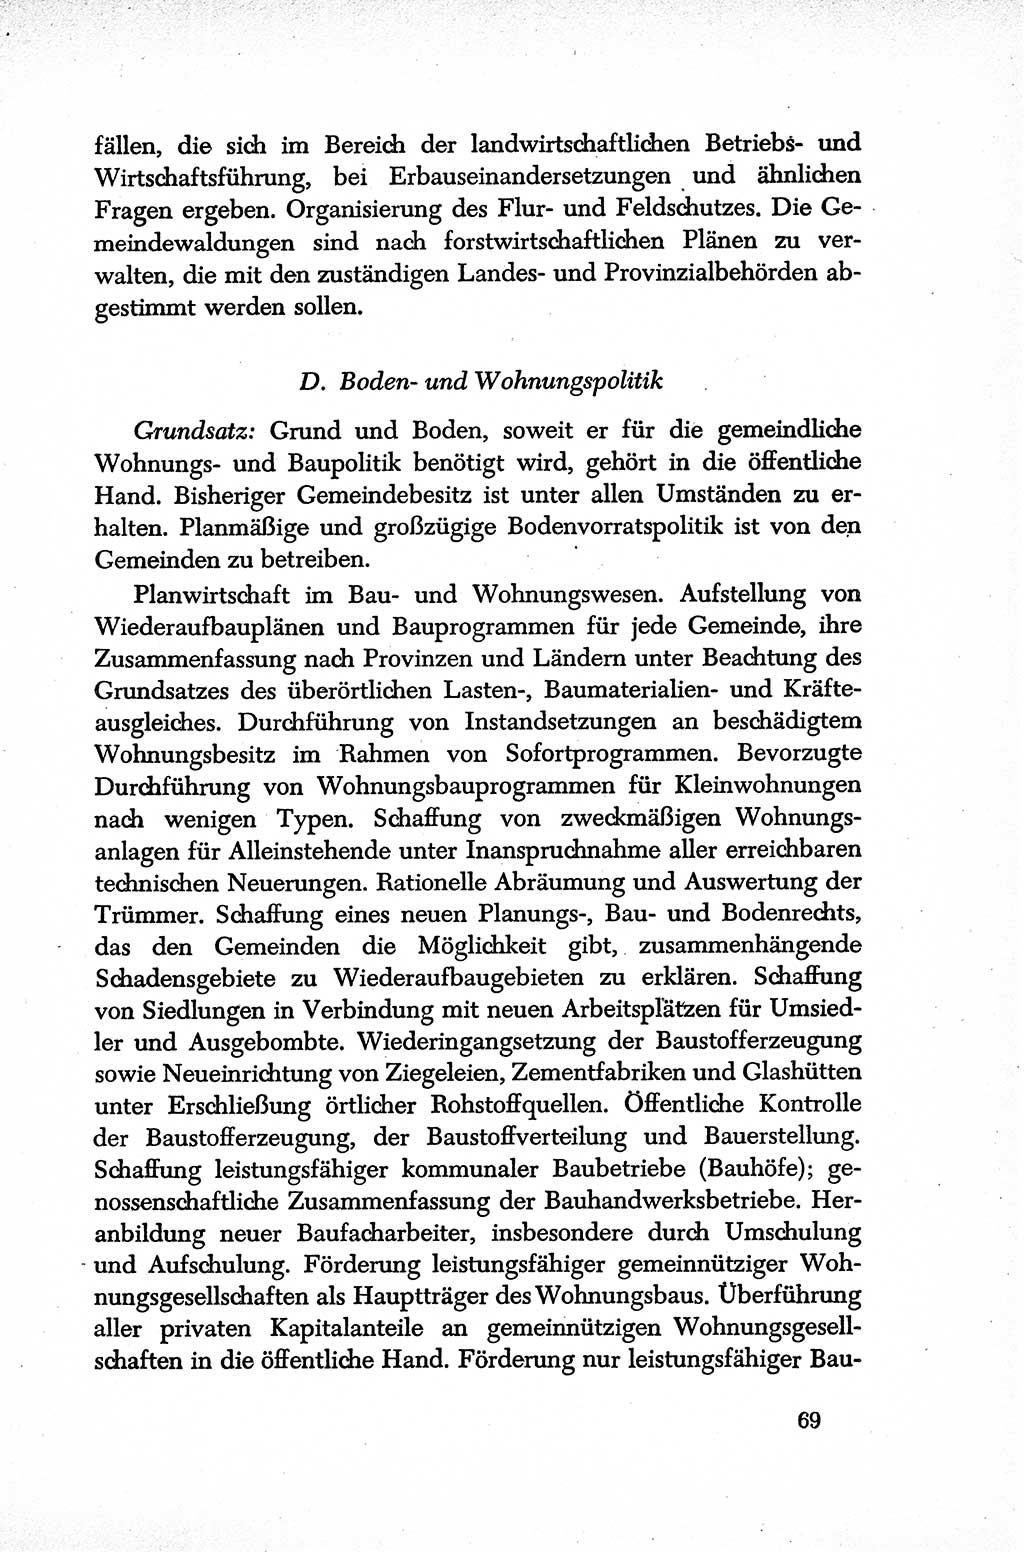 Dokumente der Sozialistischen Einheitspartei Deutschlands (SED) [Sowjetische Besatzungszone (SBZ) Deutschlands] 1946-1948, Seite 69 (Dok. SED SBZ Dtl. 1946-1948, S. 69)